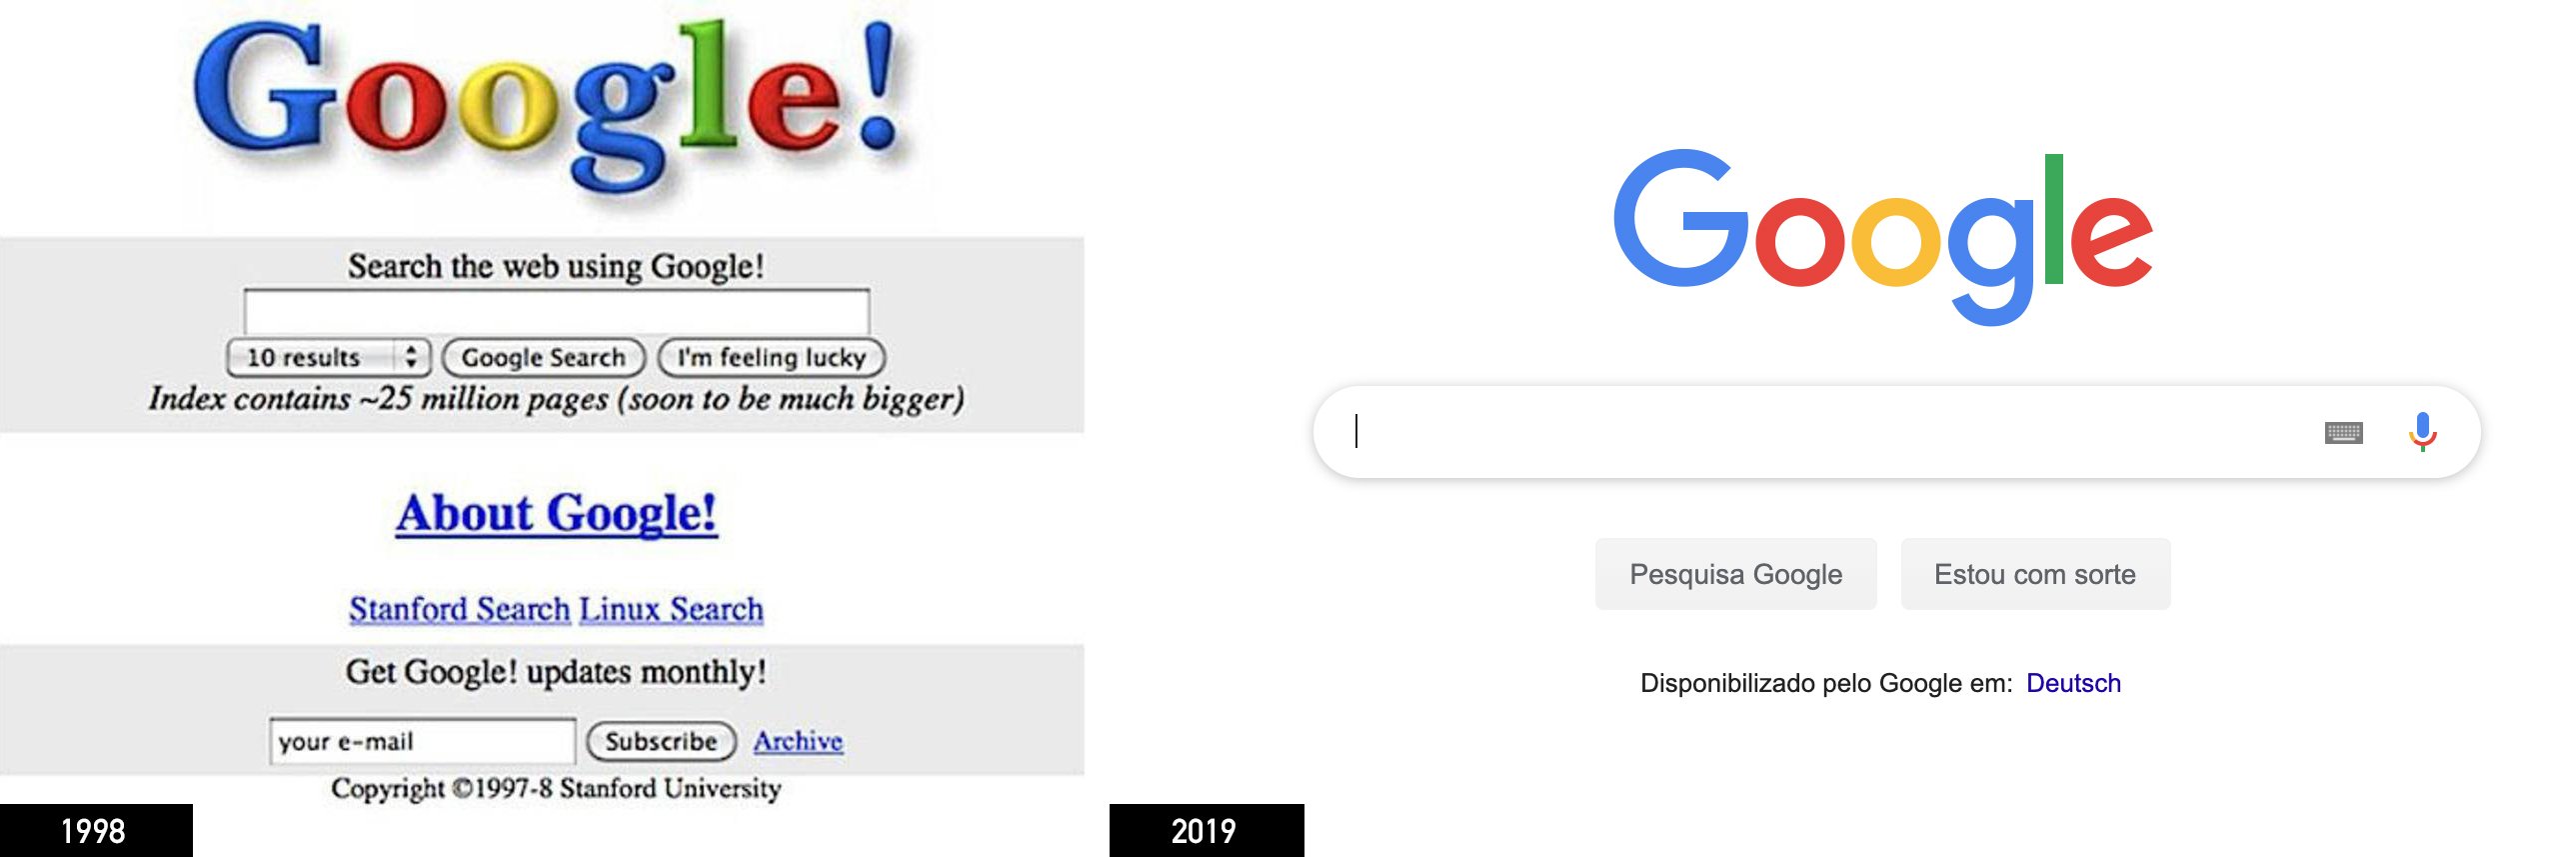 Google im Jahr 1998 und im Jahr 2019